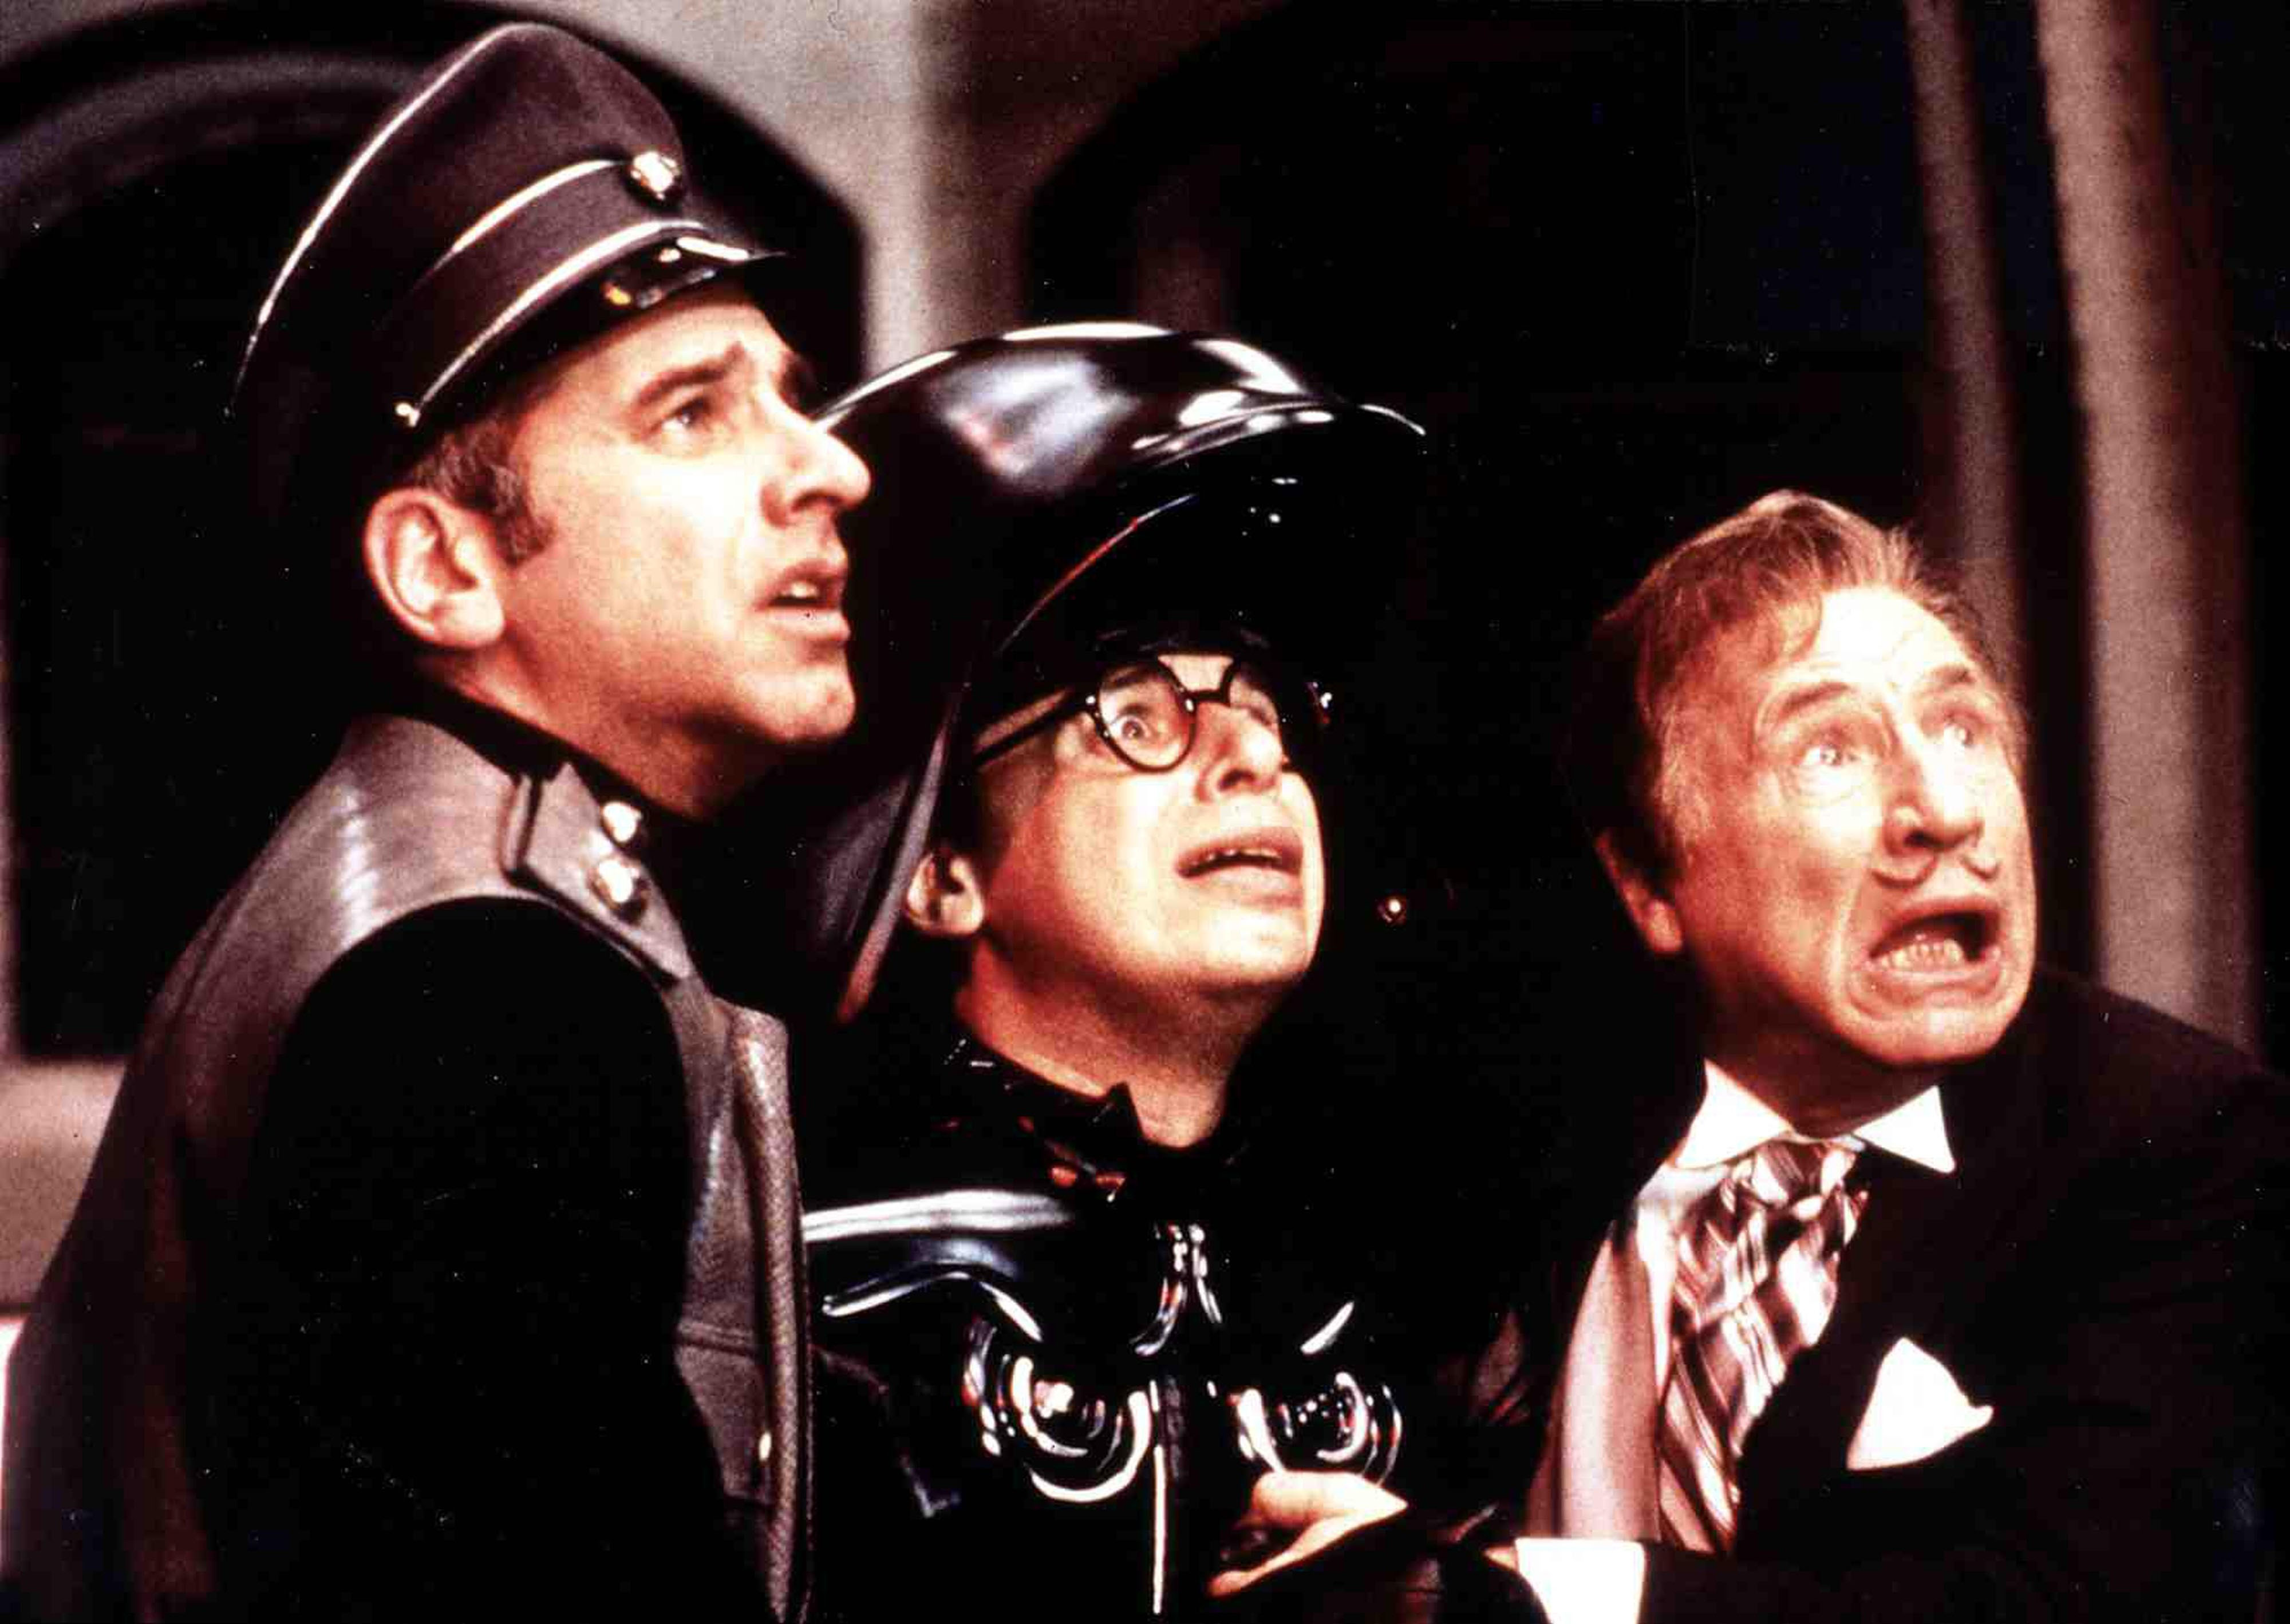 George Wyner (As Colonel Sandurz), Rick Moranis (as Dark Helmet) and Mel Brooks as President Skroob) looking up in fear in Spaceballs